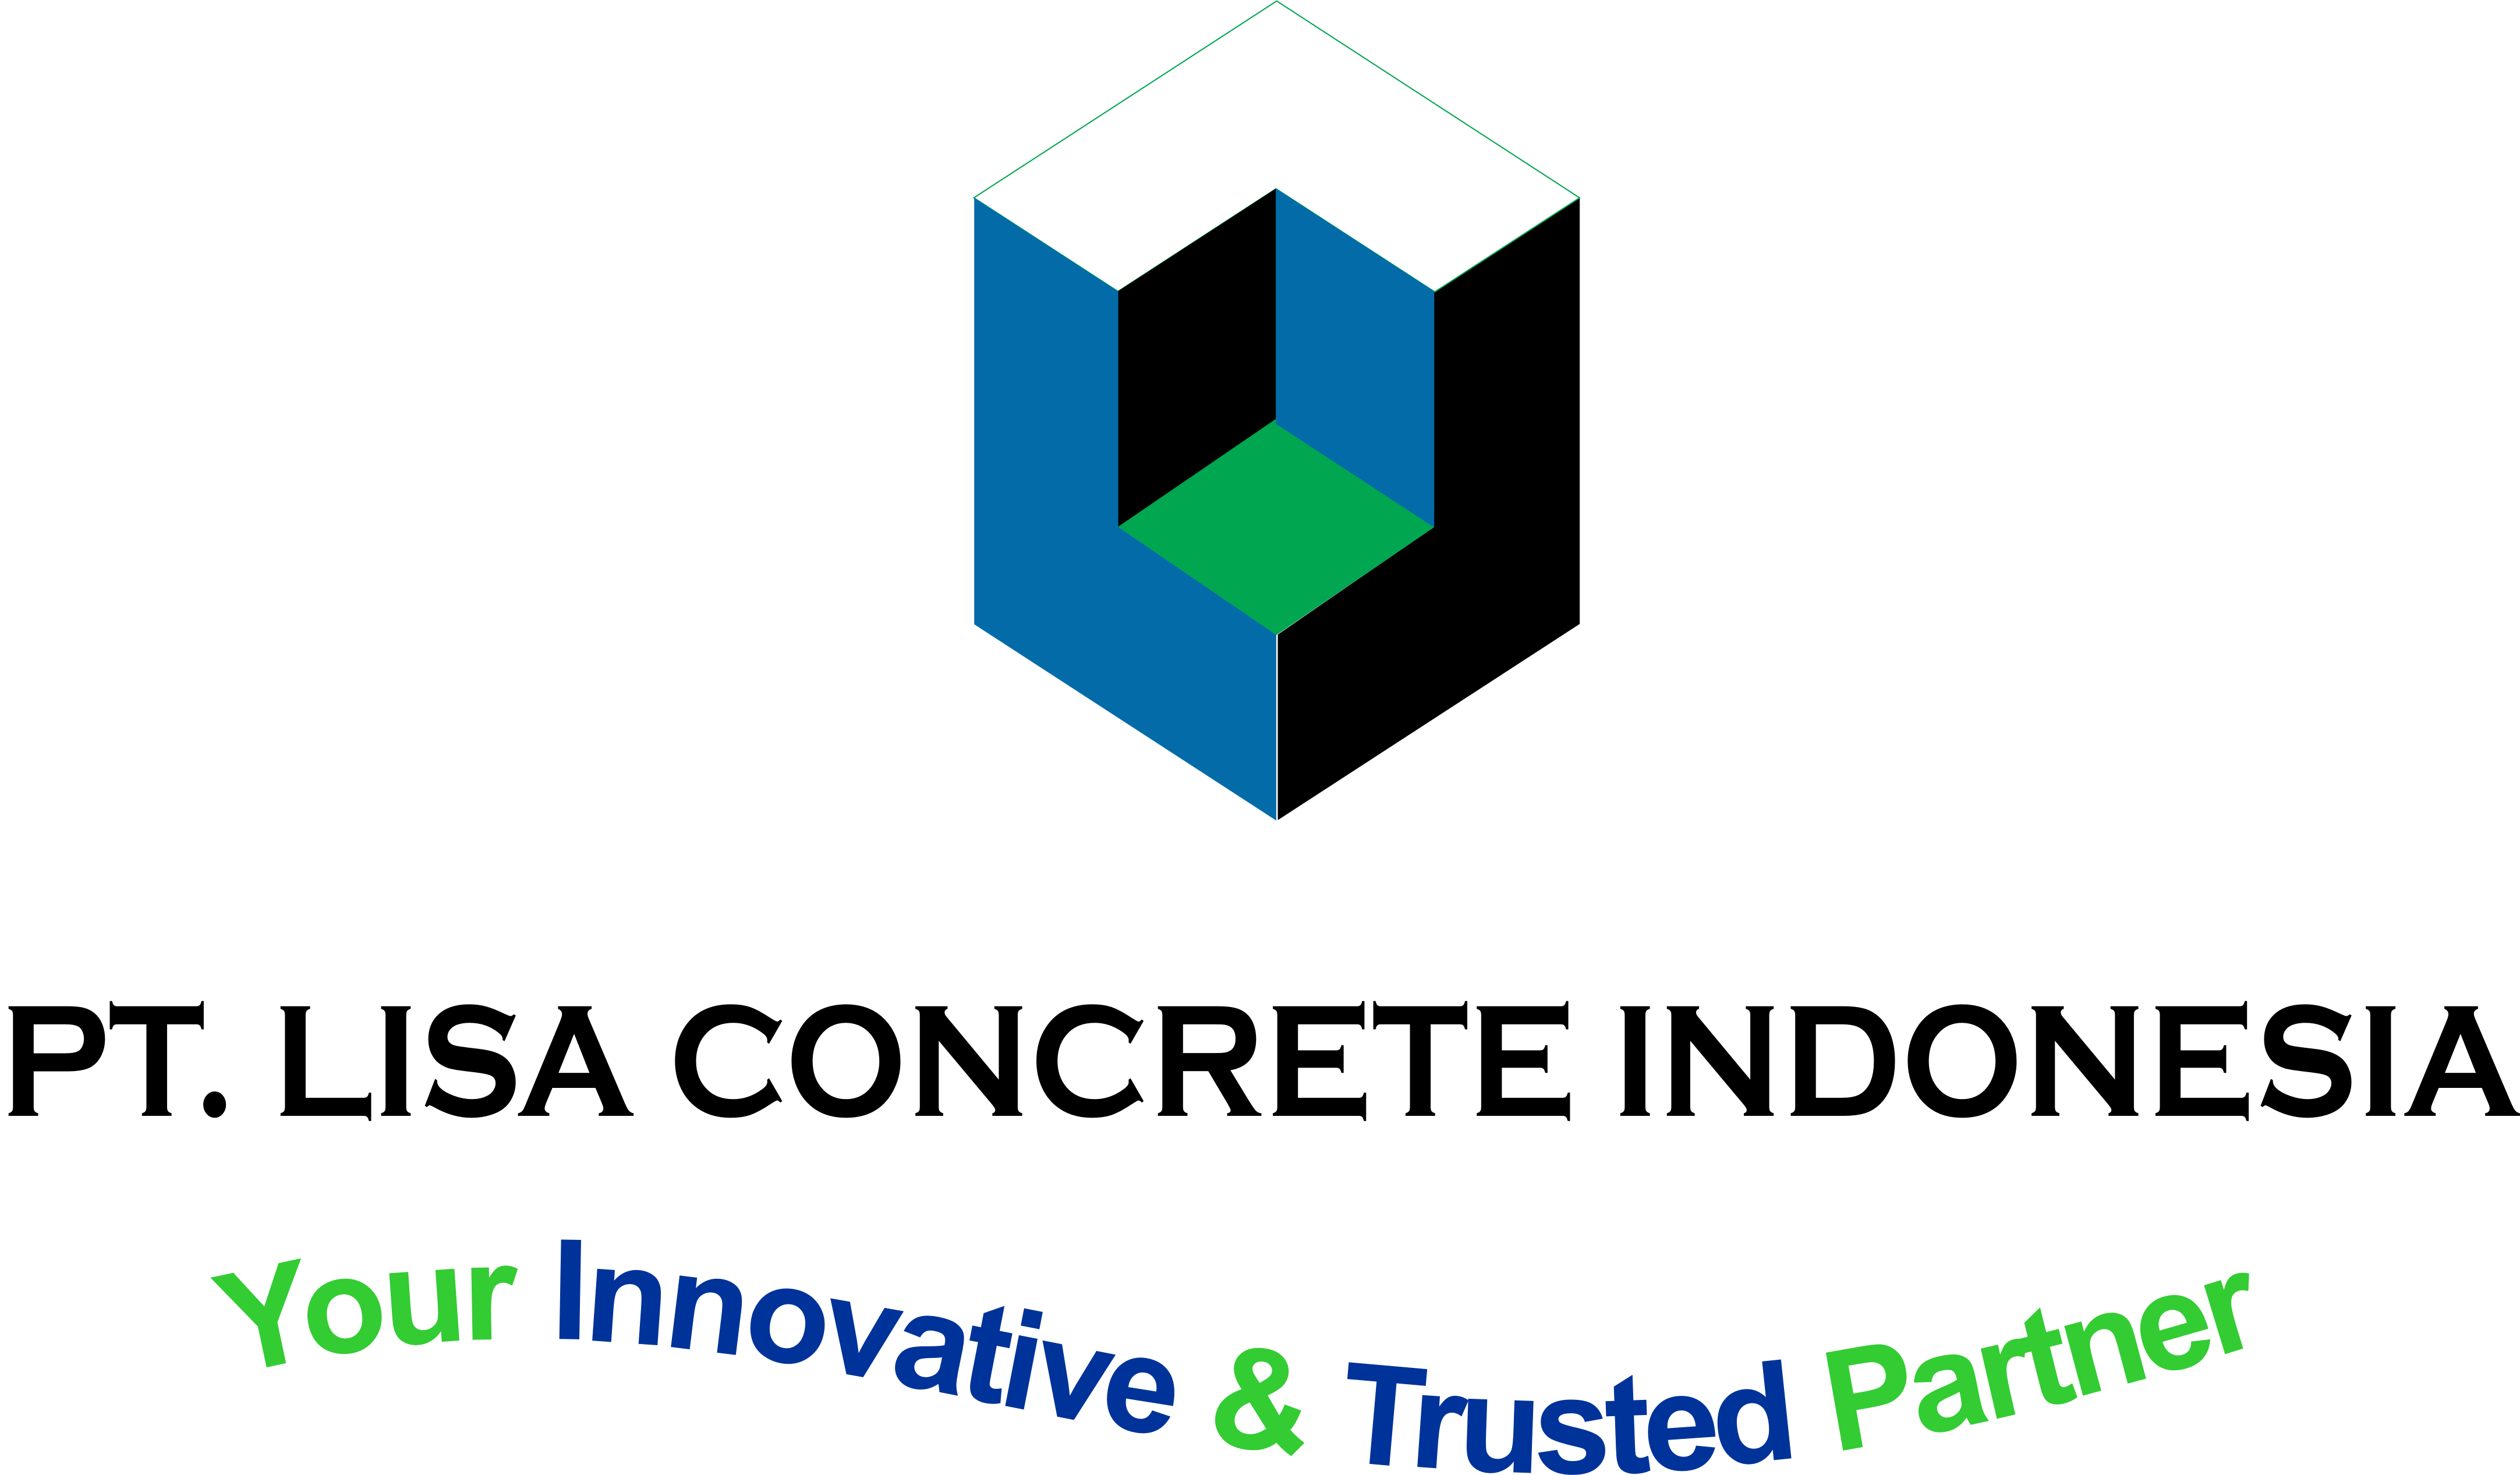 Lowongan Kerja Sales Engineer di Lisa Concrete Indonesia, Plesungan, Gondangrejo, Kab. Karanganyar, Jawa Tengah, Indonesia